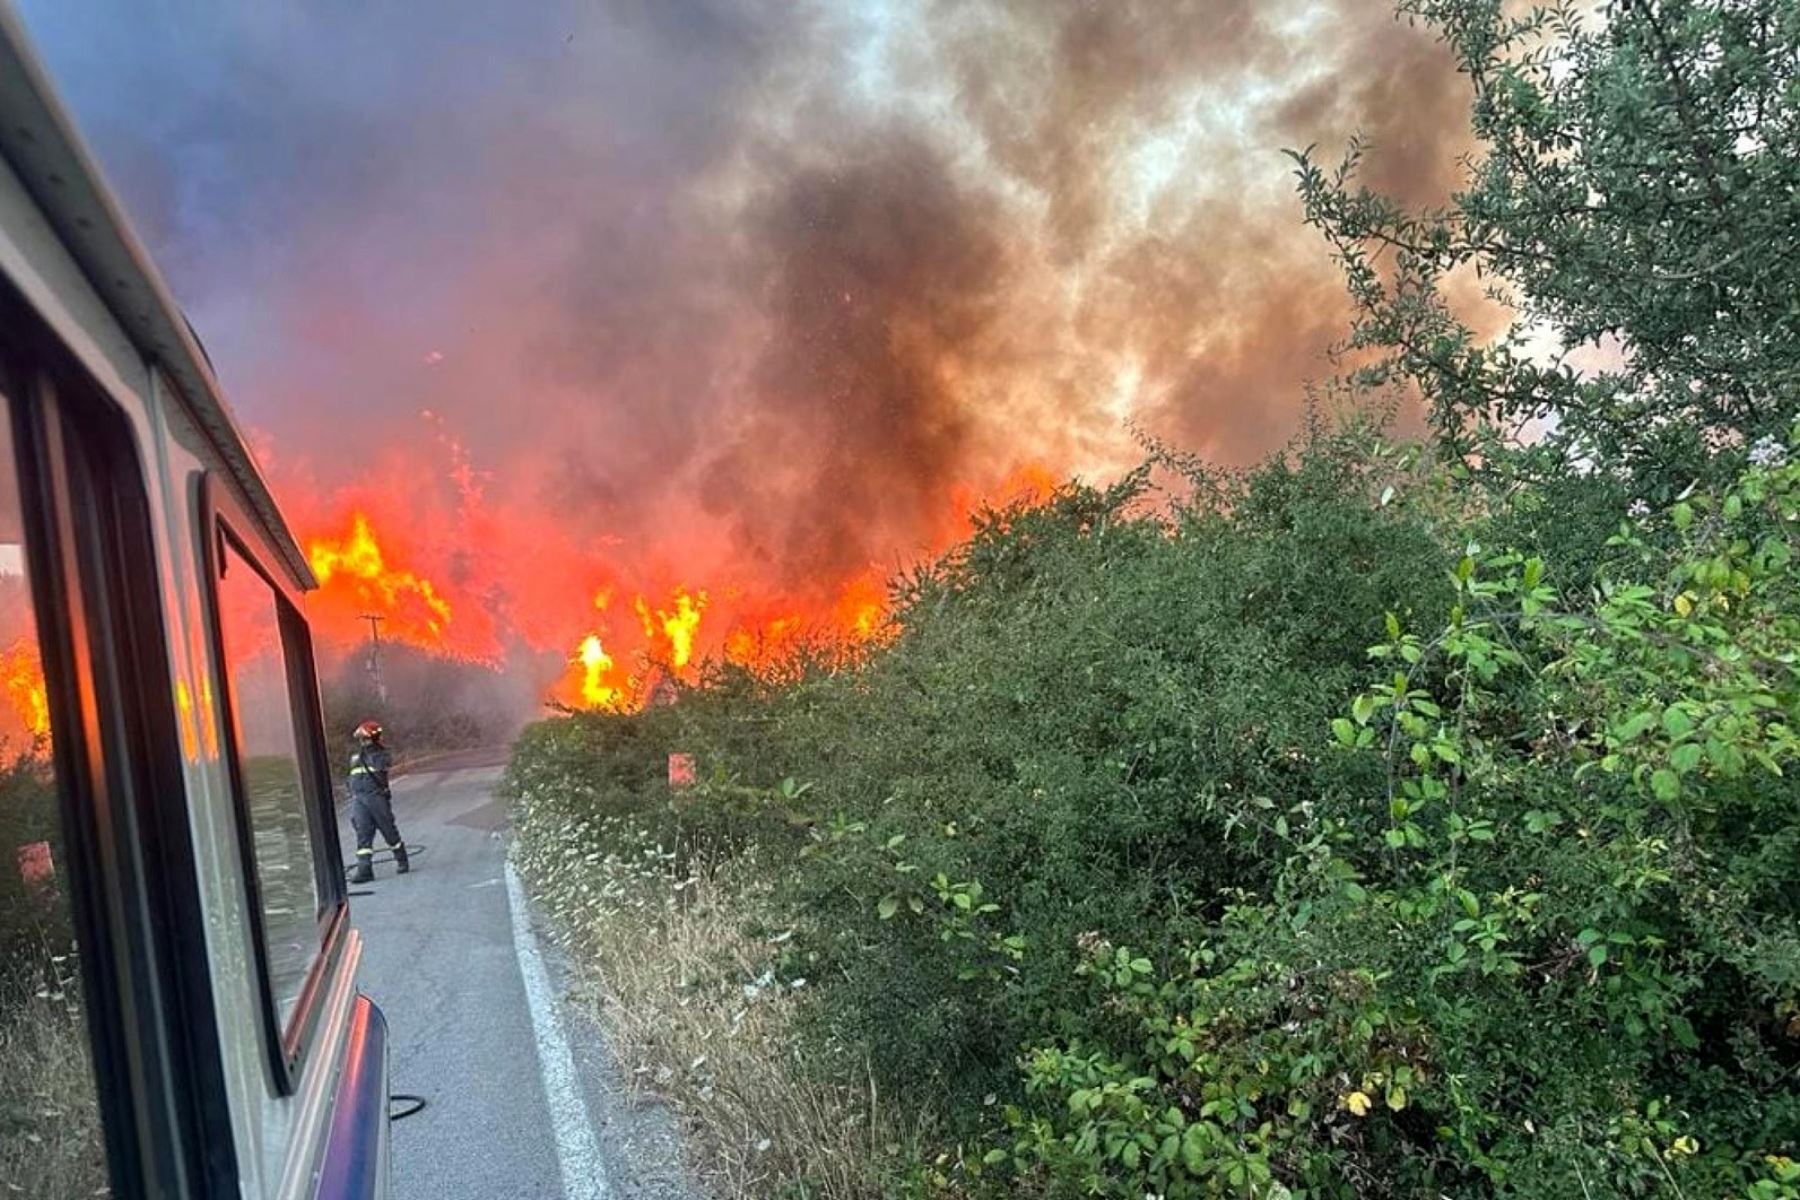 Italia se encuentra en sus días más complicados a causa de incendios devastadores y tormentas